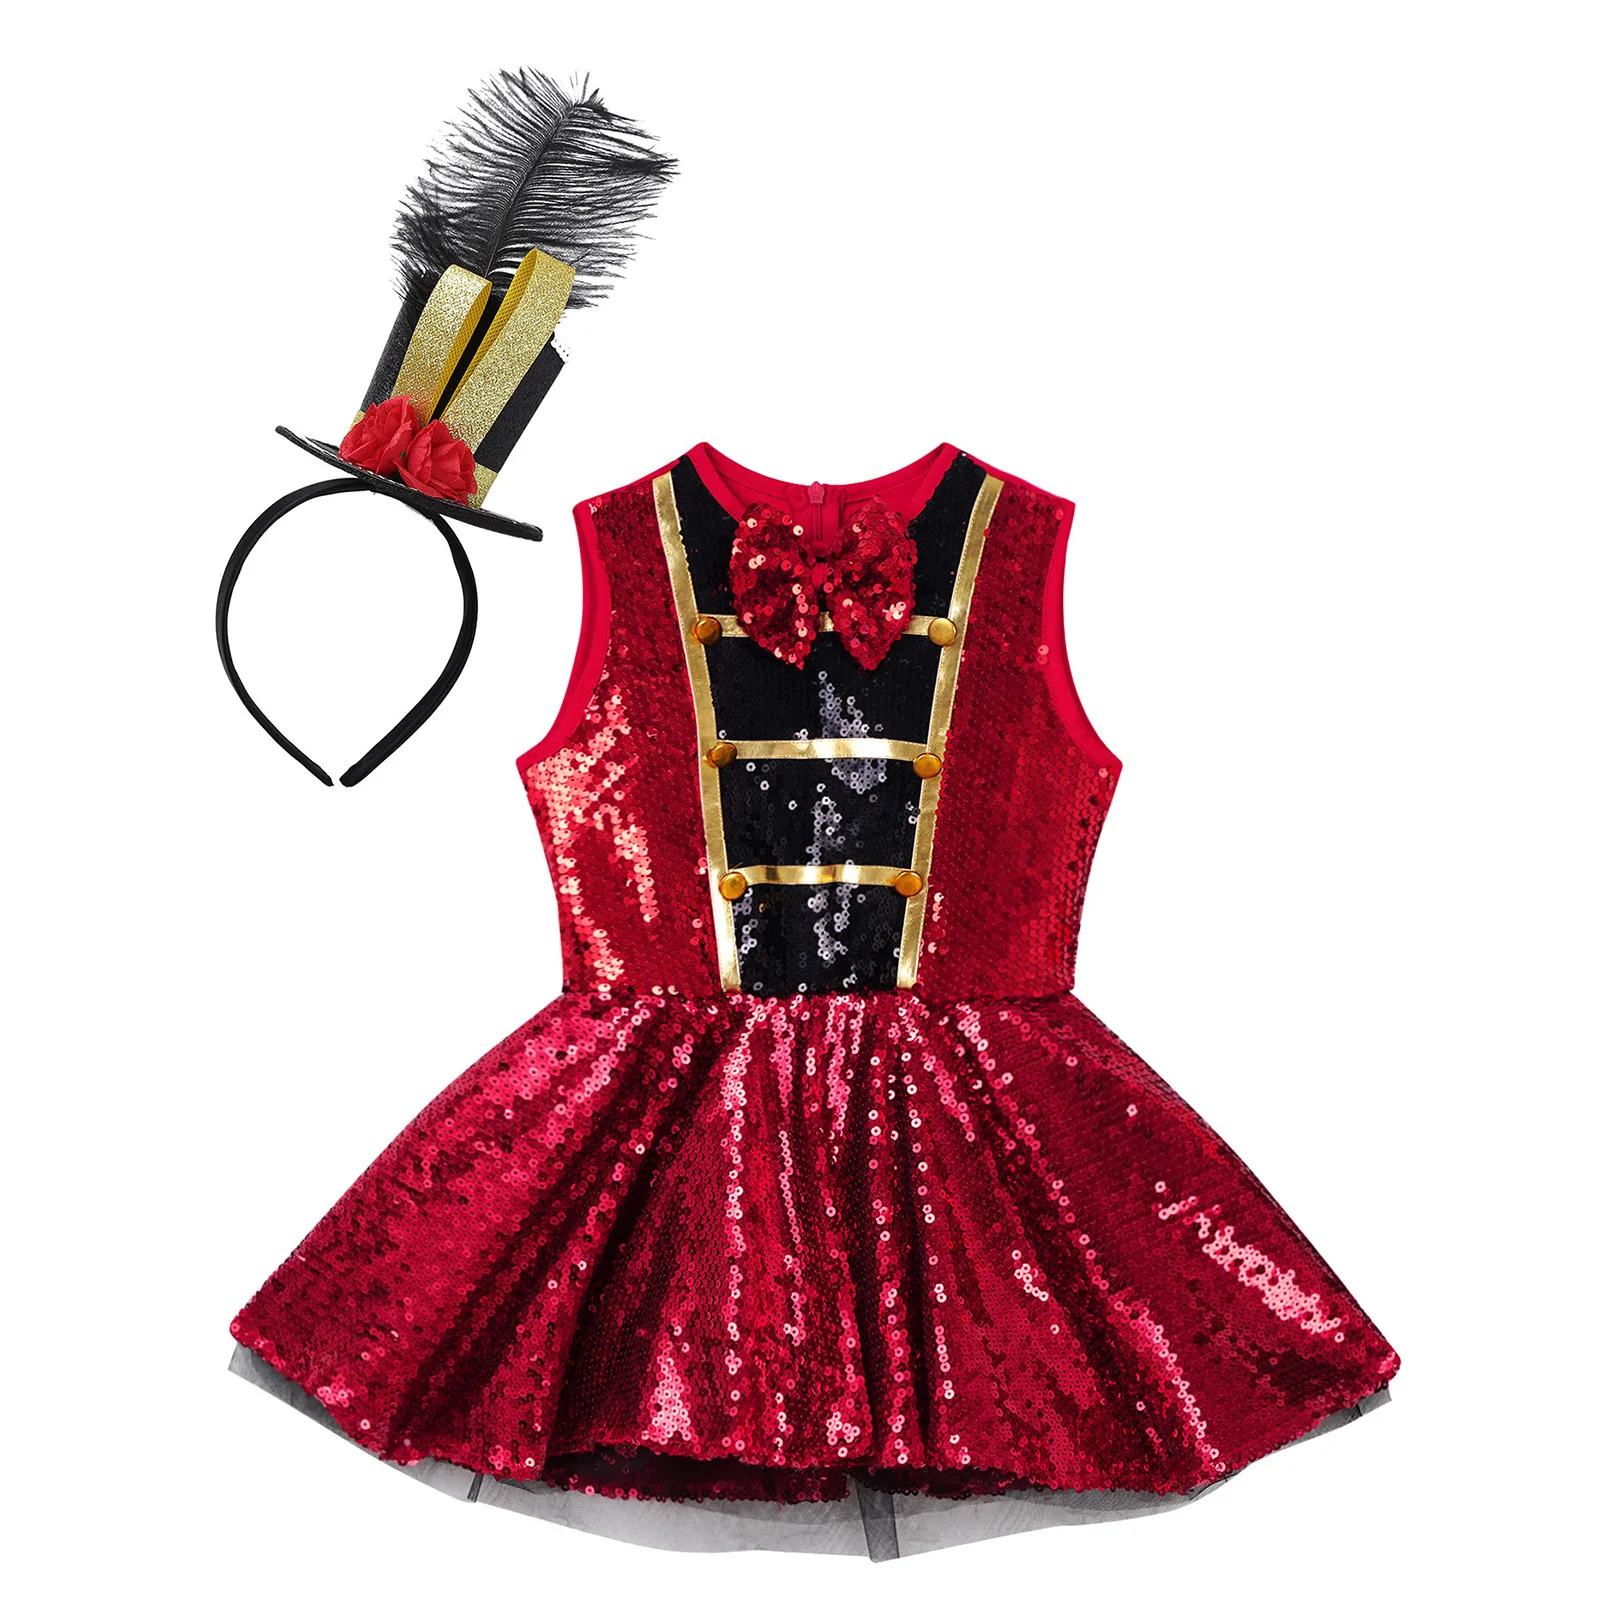 ילדים בנות נוצץ נצנצים ריקוד בלט השמלה האדומה Bowknot שרוולים חג המולד קרקס קרקס מפואר שמלה למעלה חצאית בגד גוף שמלה . ' - ' . 2